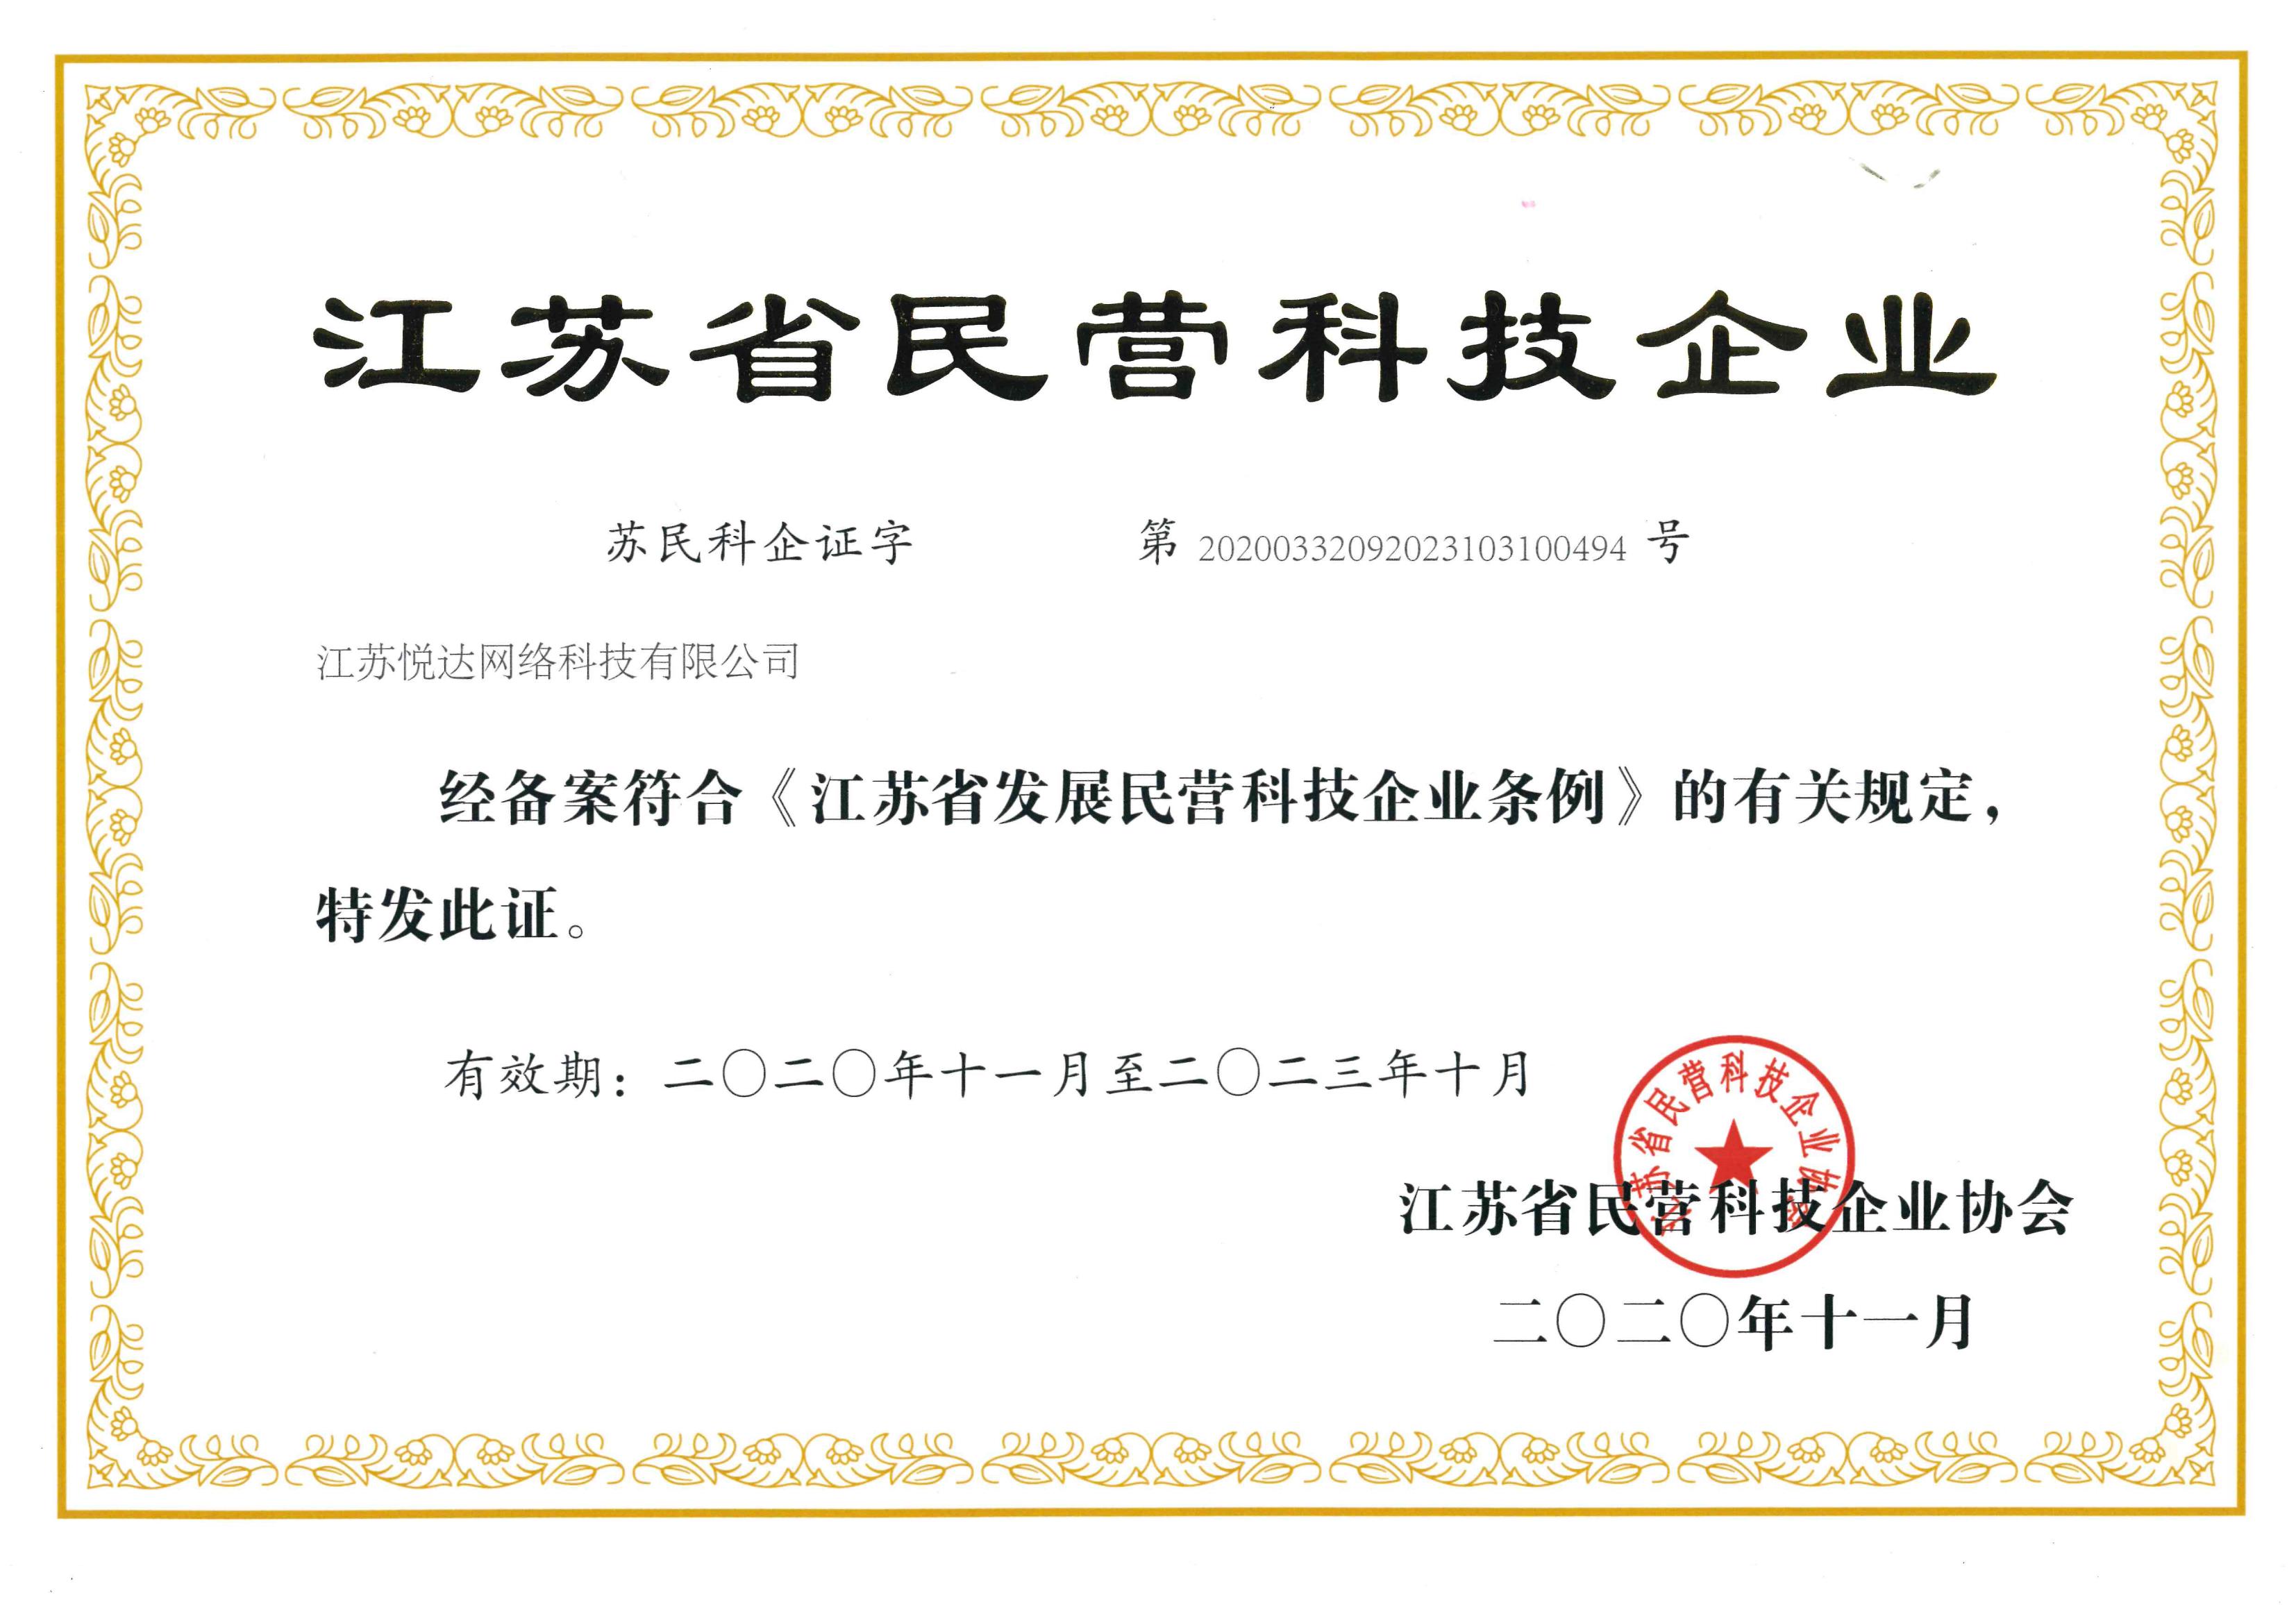 20201101 江蘇省民營科技企業證